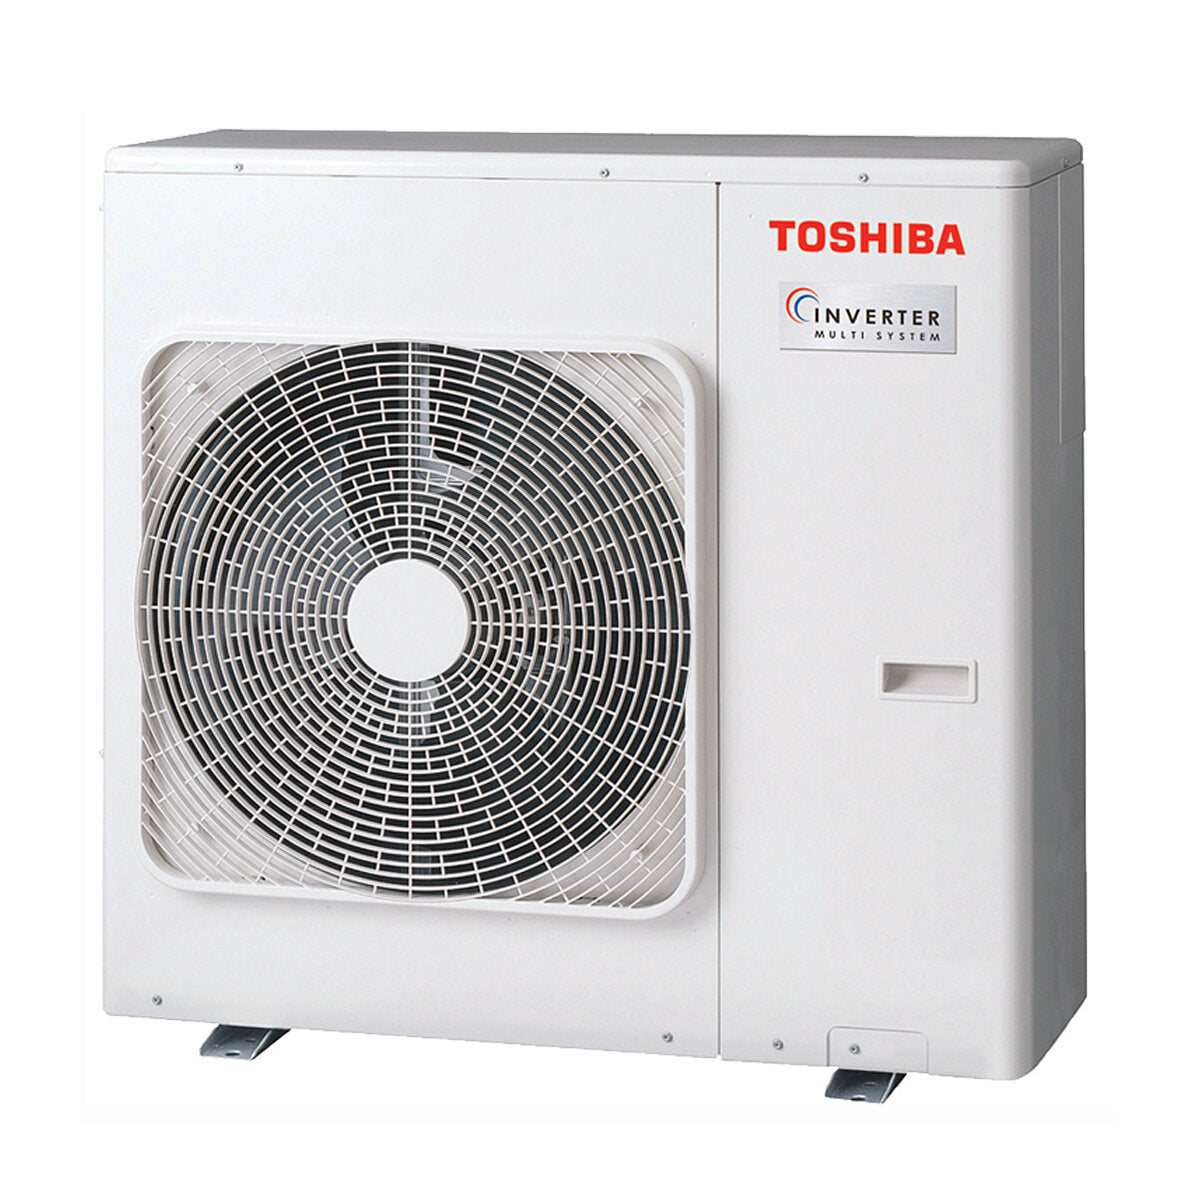 Toshiba Ductable Air Conditioner U2 penta split 7000 + 9000 + 9000 + 12000 + 12000 BTU inverter A++ unité extérieure 10,0 kW